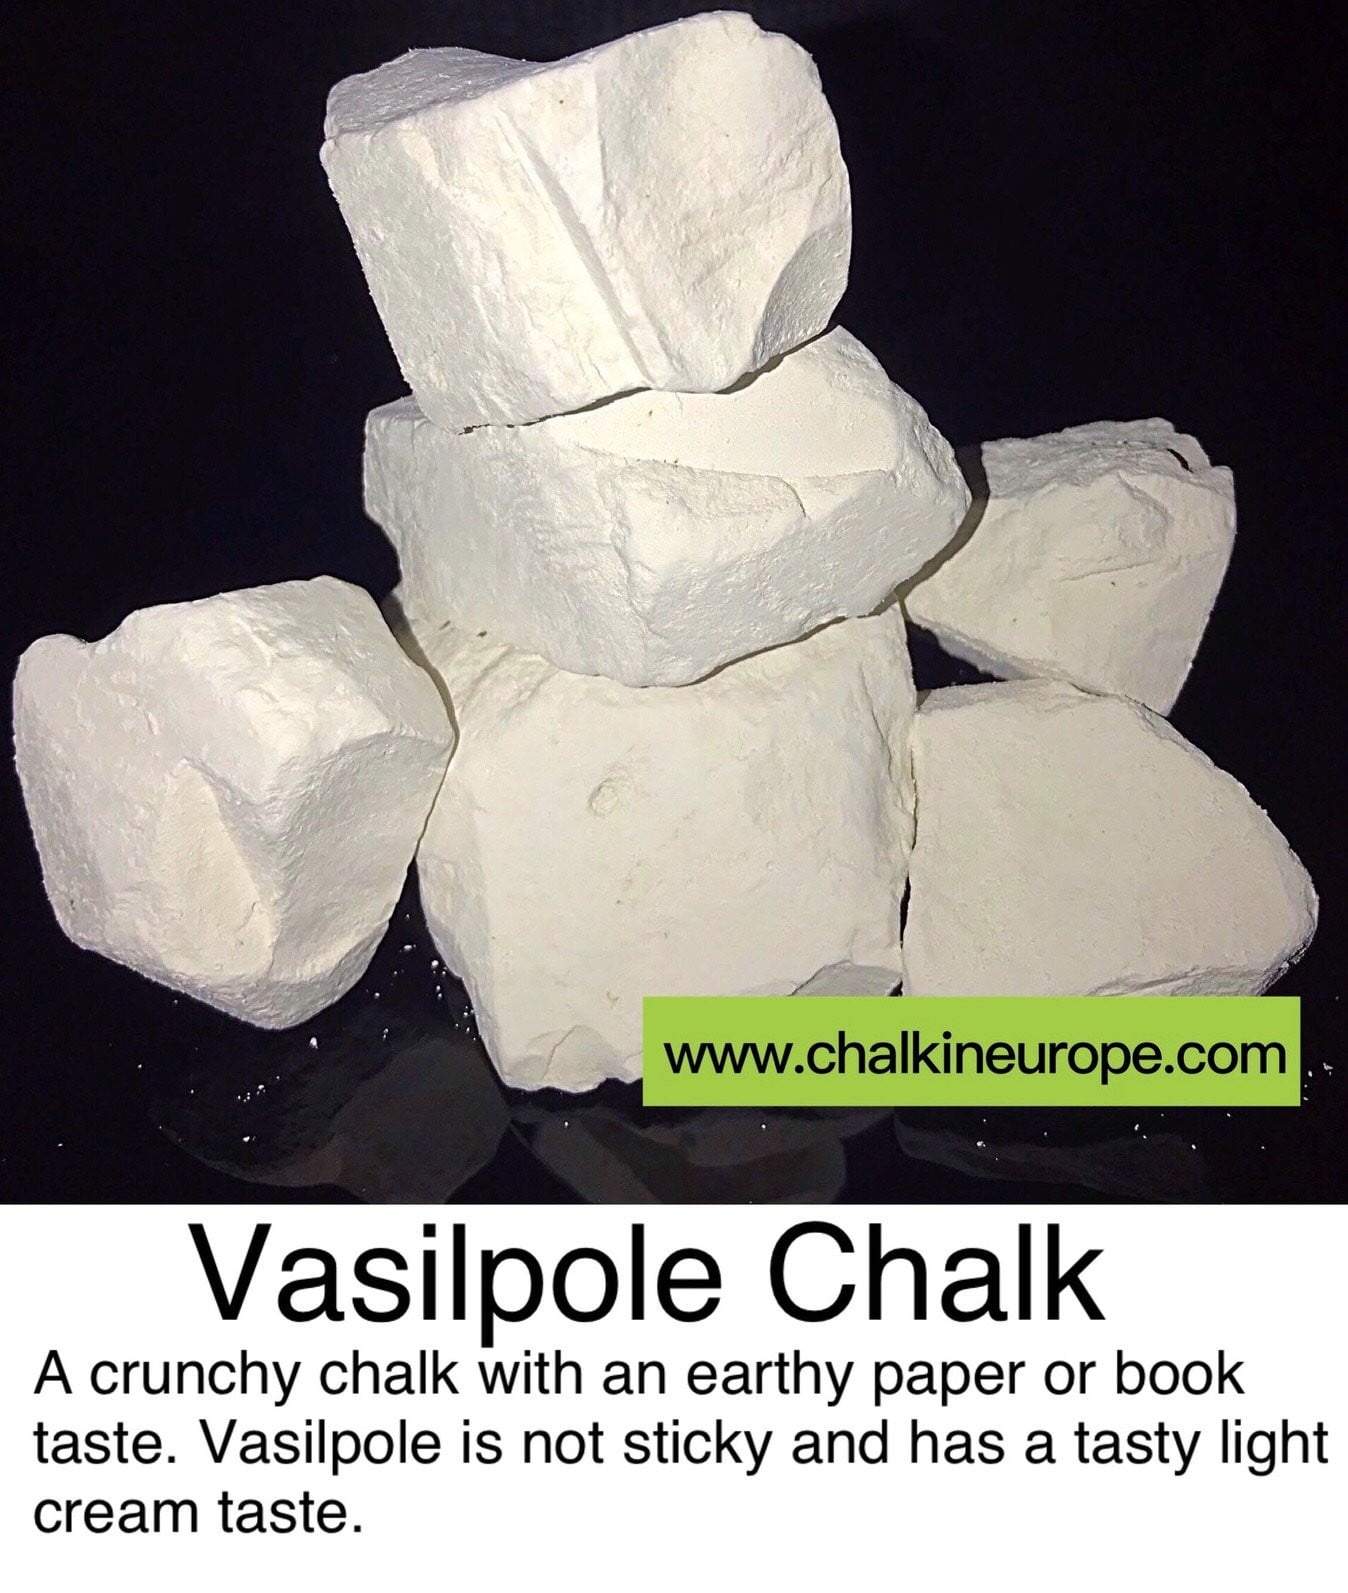 Vasilpole Chalk - Chalkineurope